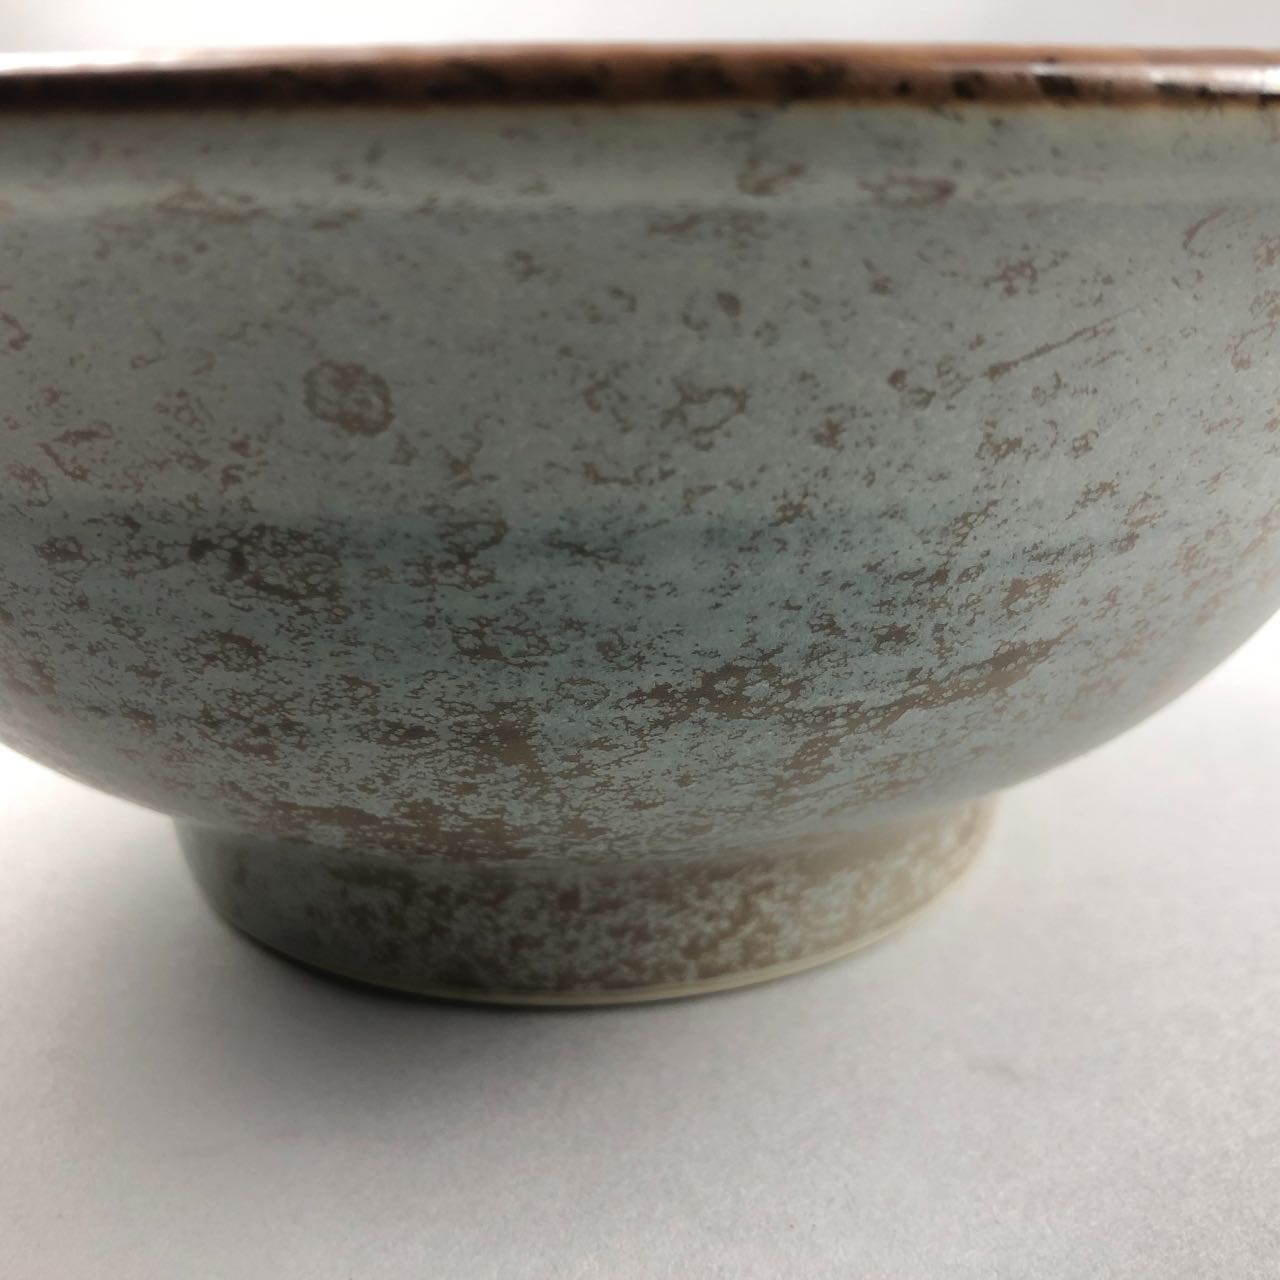 Hakubai Japanese Bowl, two sizes, 7 3/4" dia.(26 oz) and 8 3/8"dia.(40 oz)